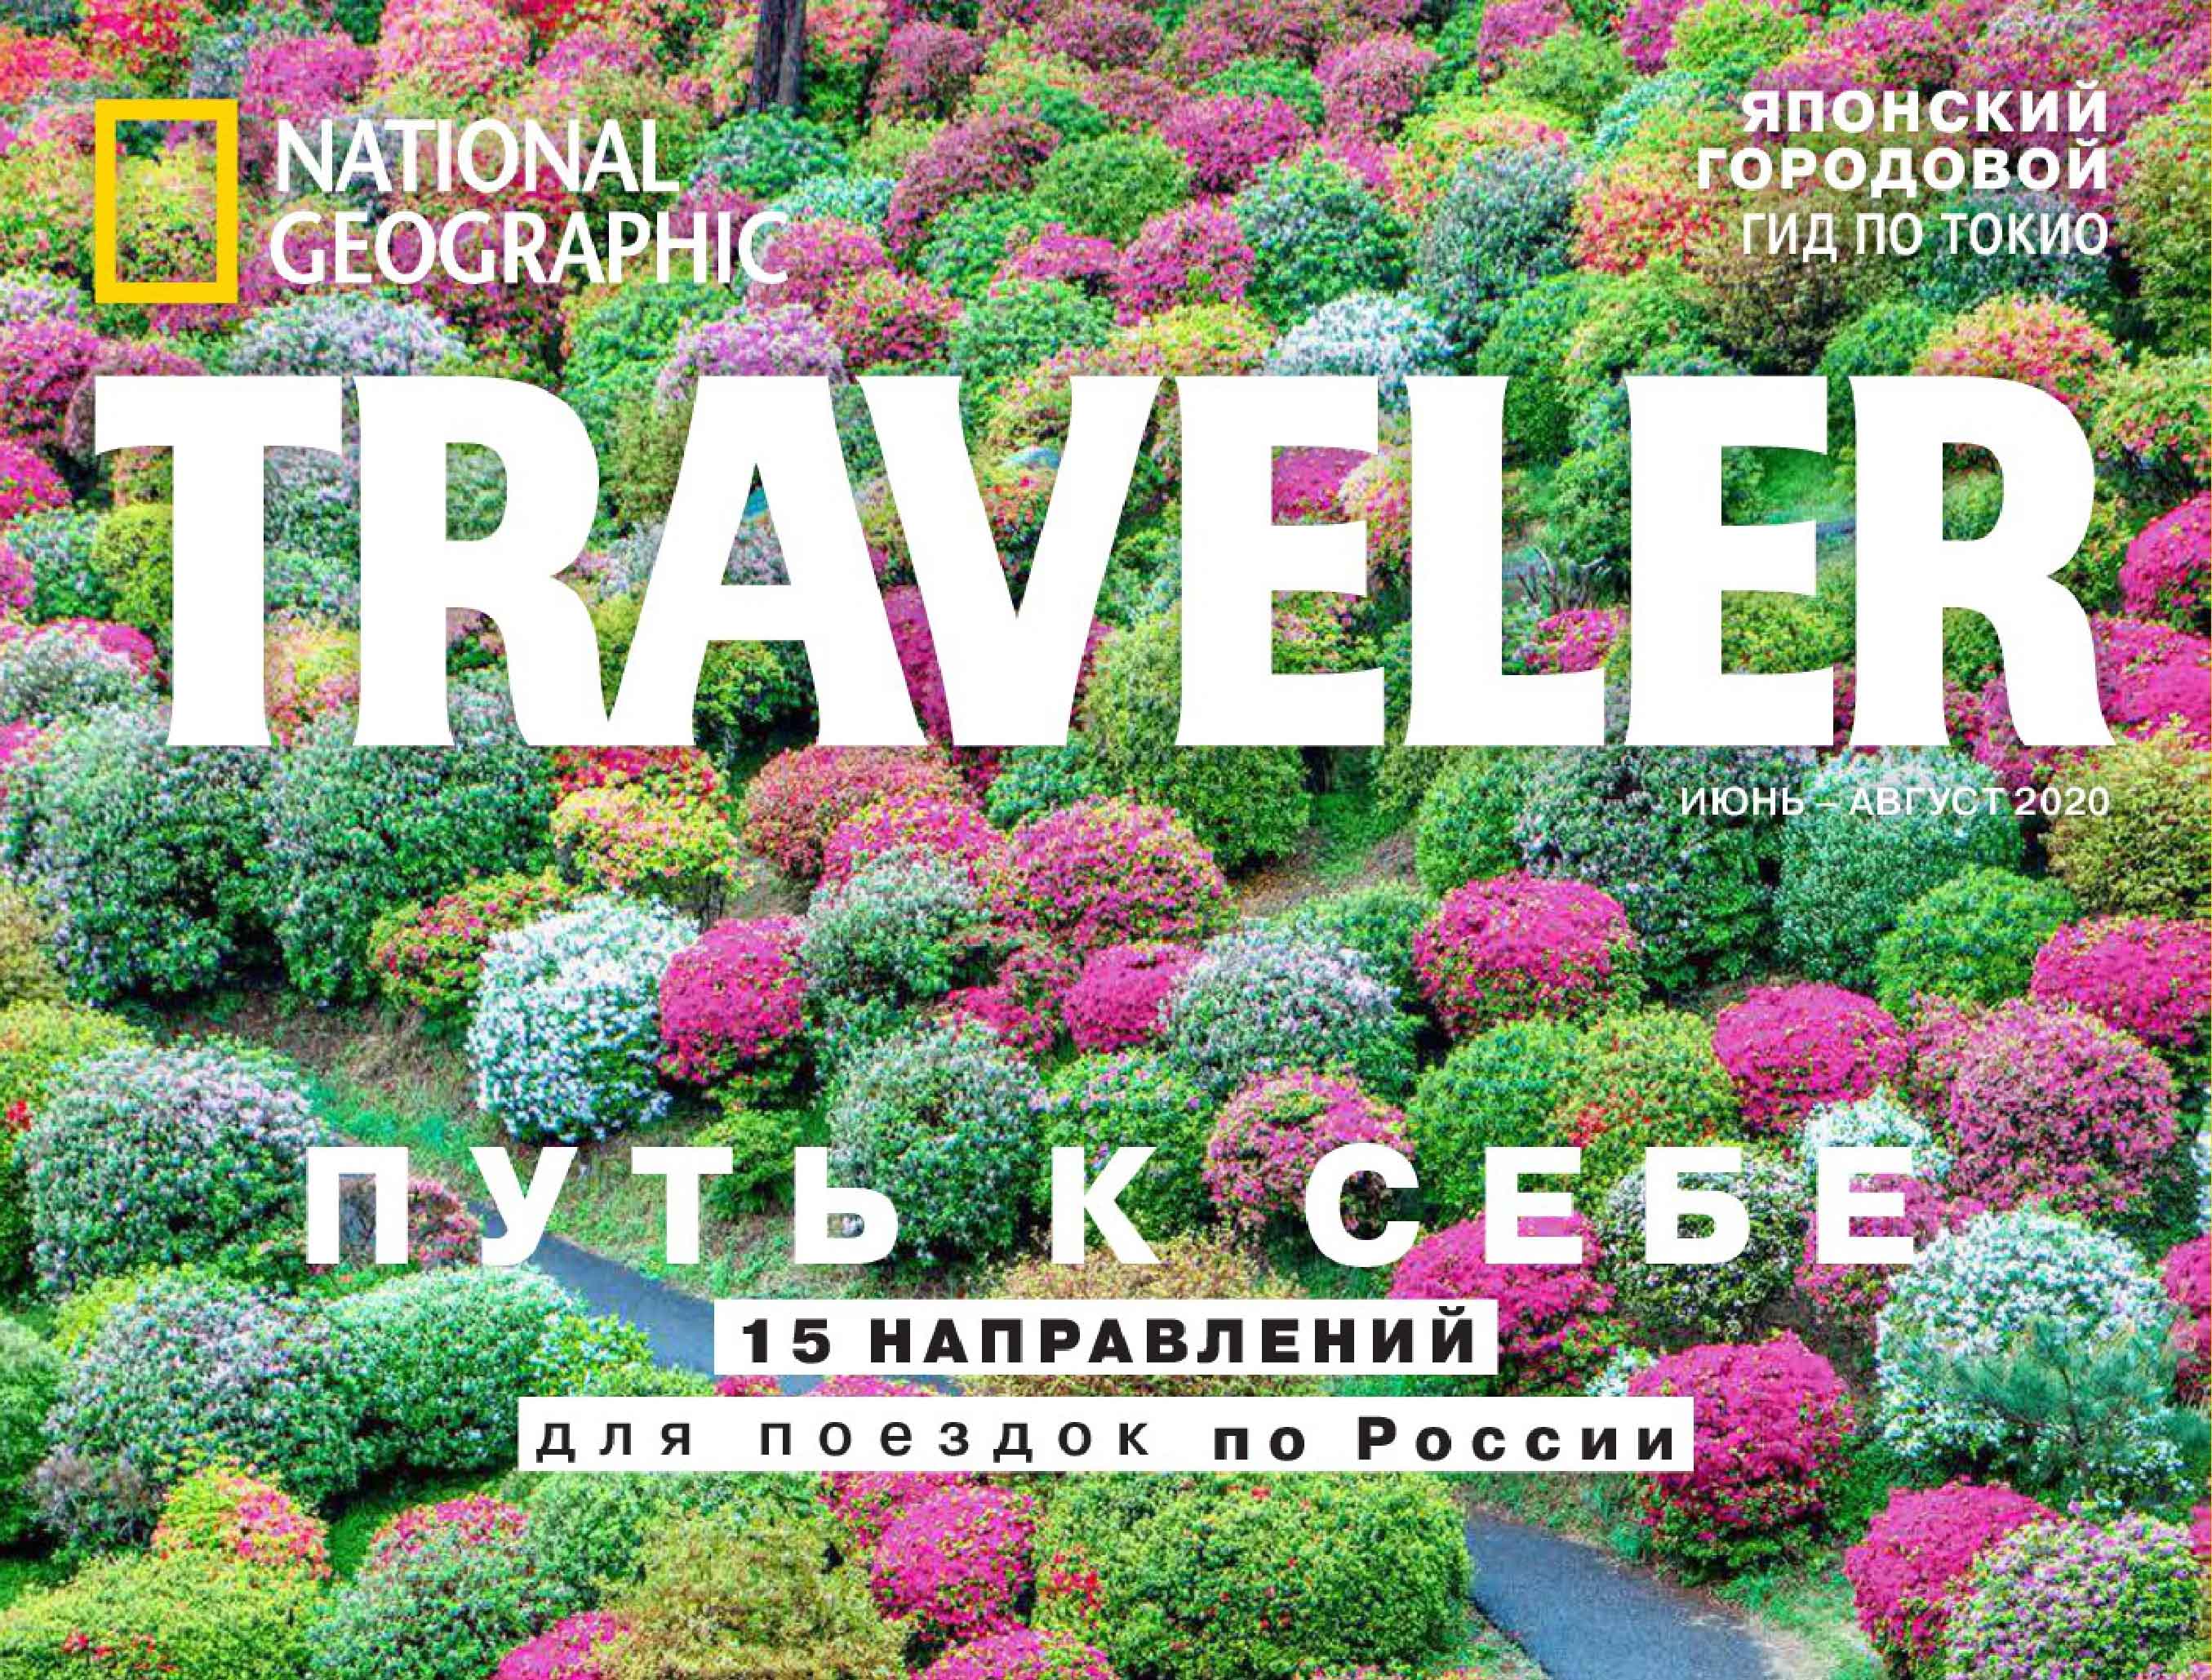 Журнал о путешествиях National Geographic Traveler опубликовал материалы о достопримечательностях Арзамаса и Дивеева 